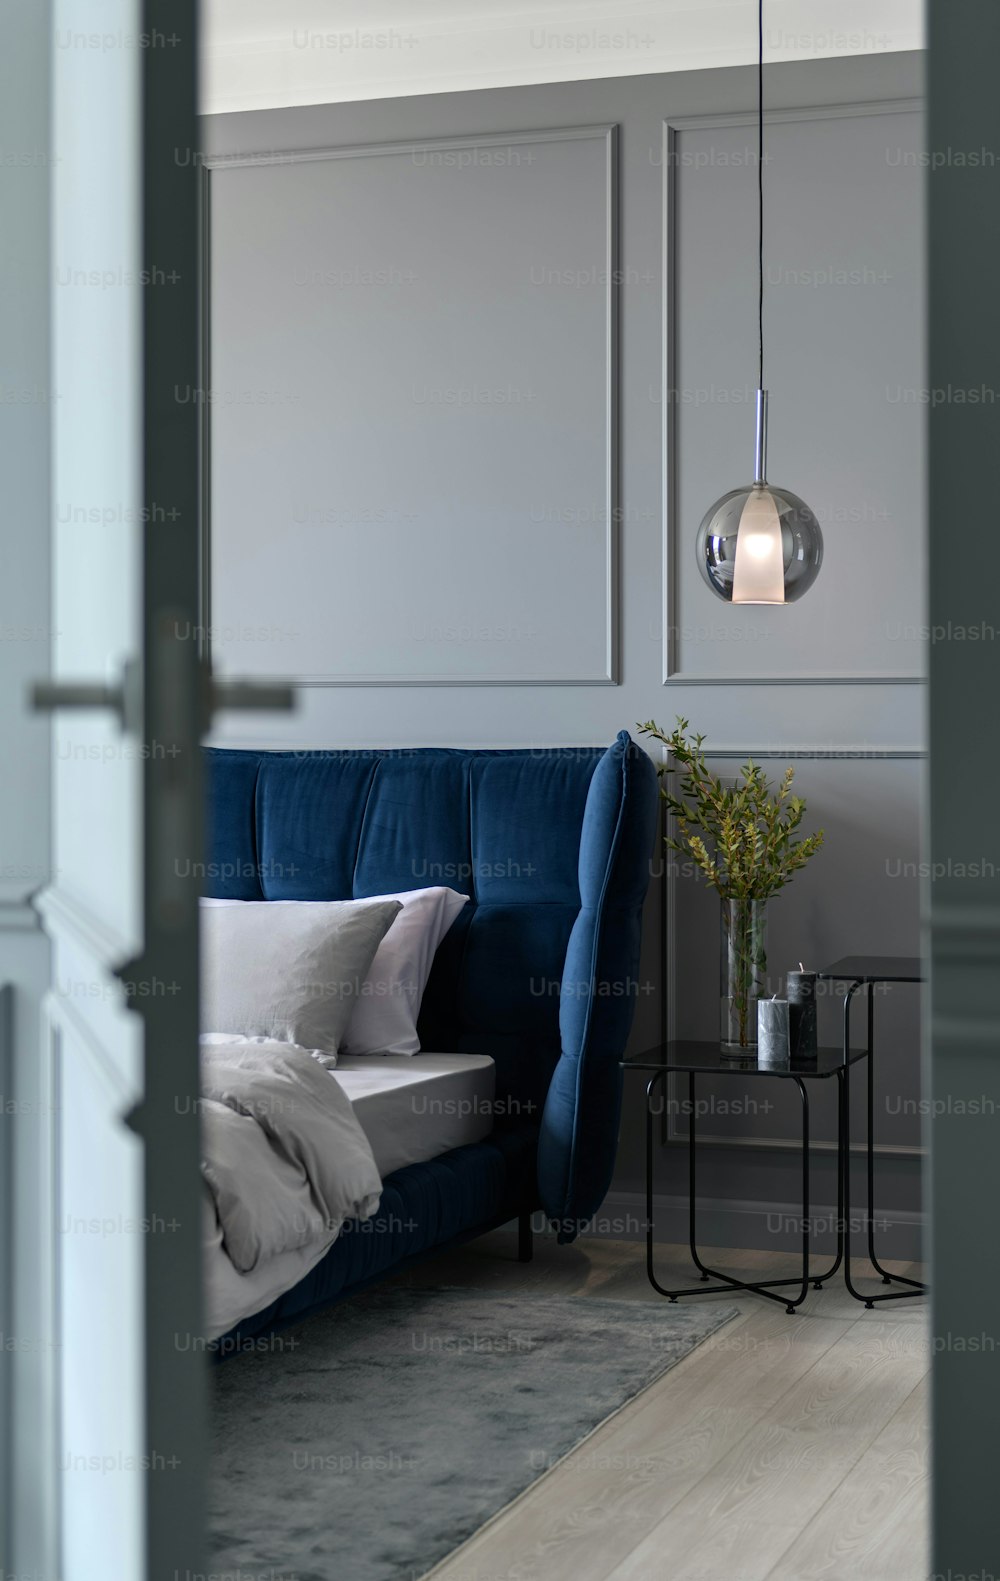 Un divano blu seduto in un soggiorno accanto a una lampada